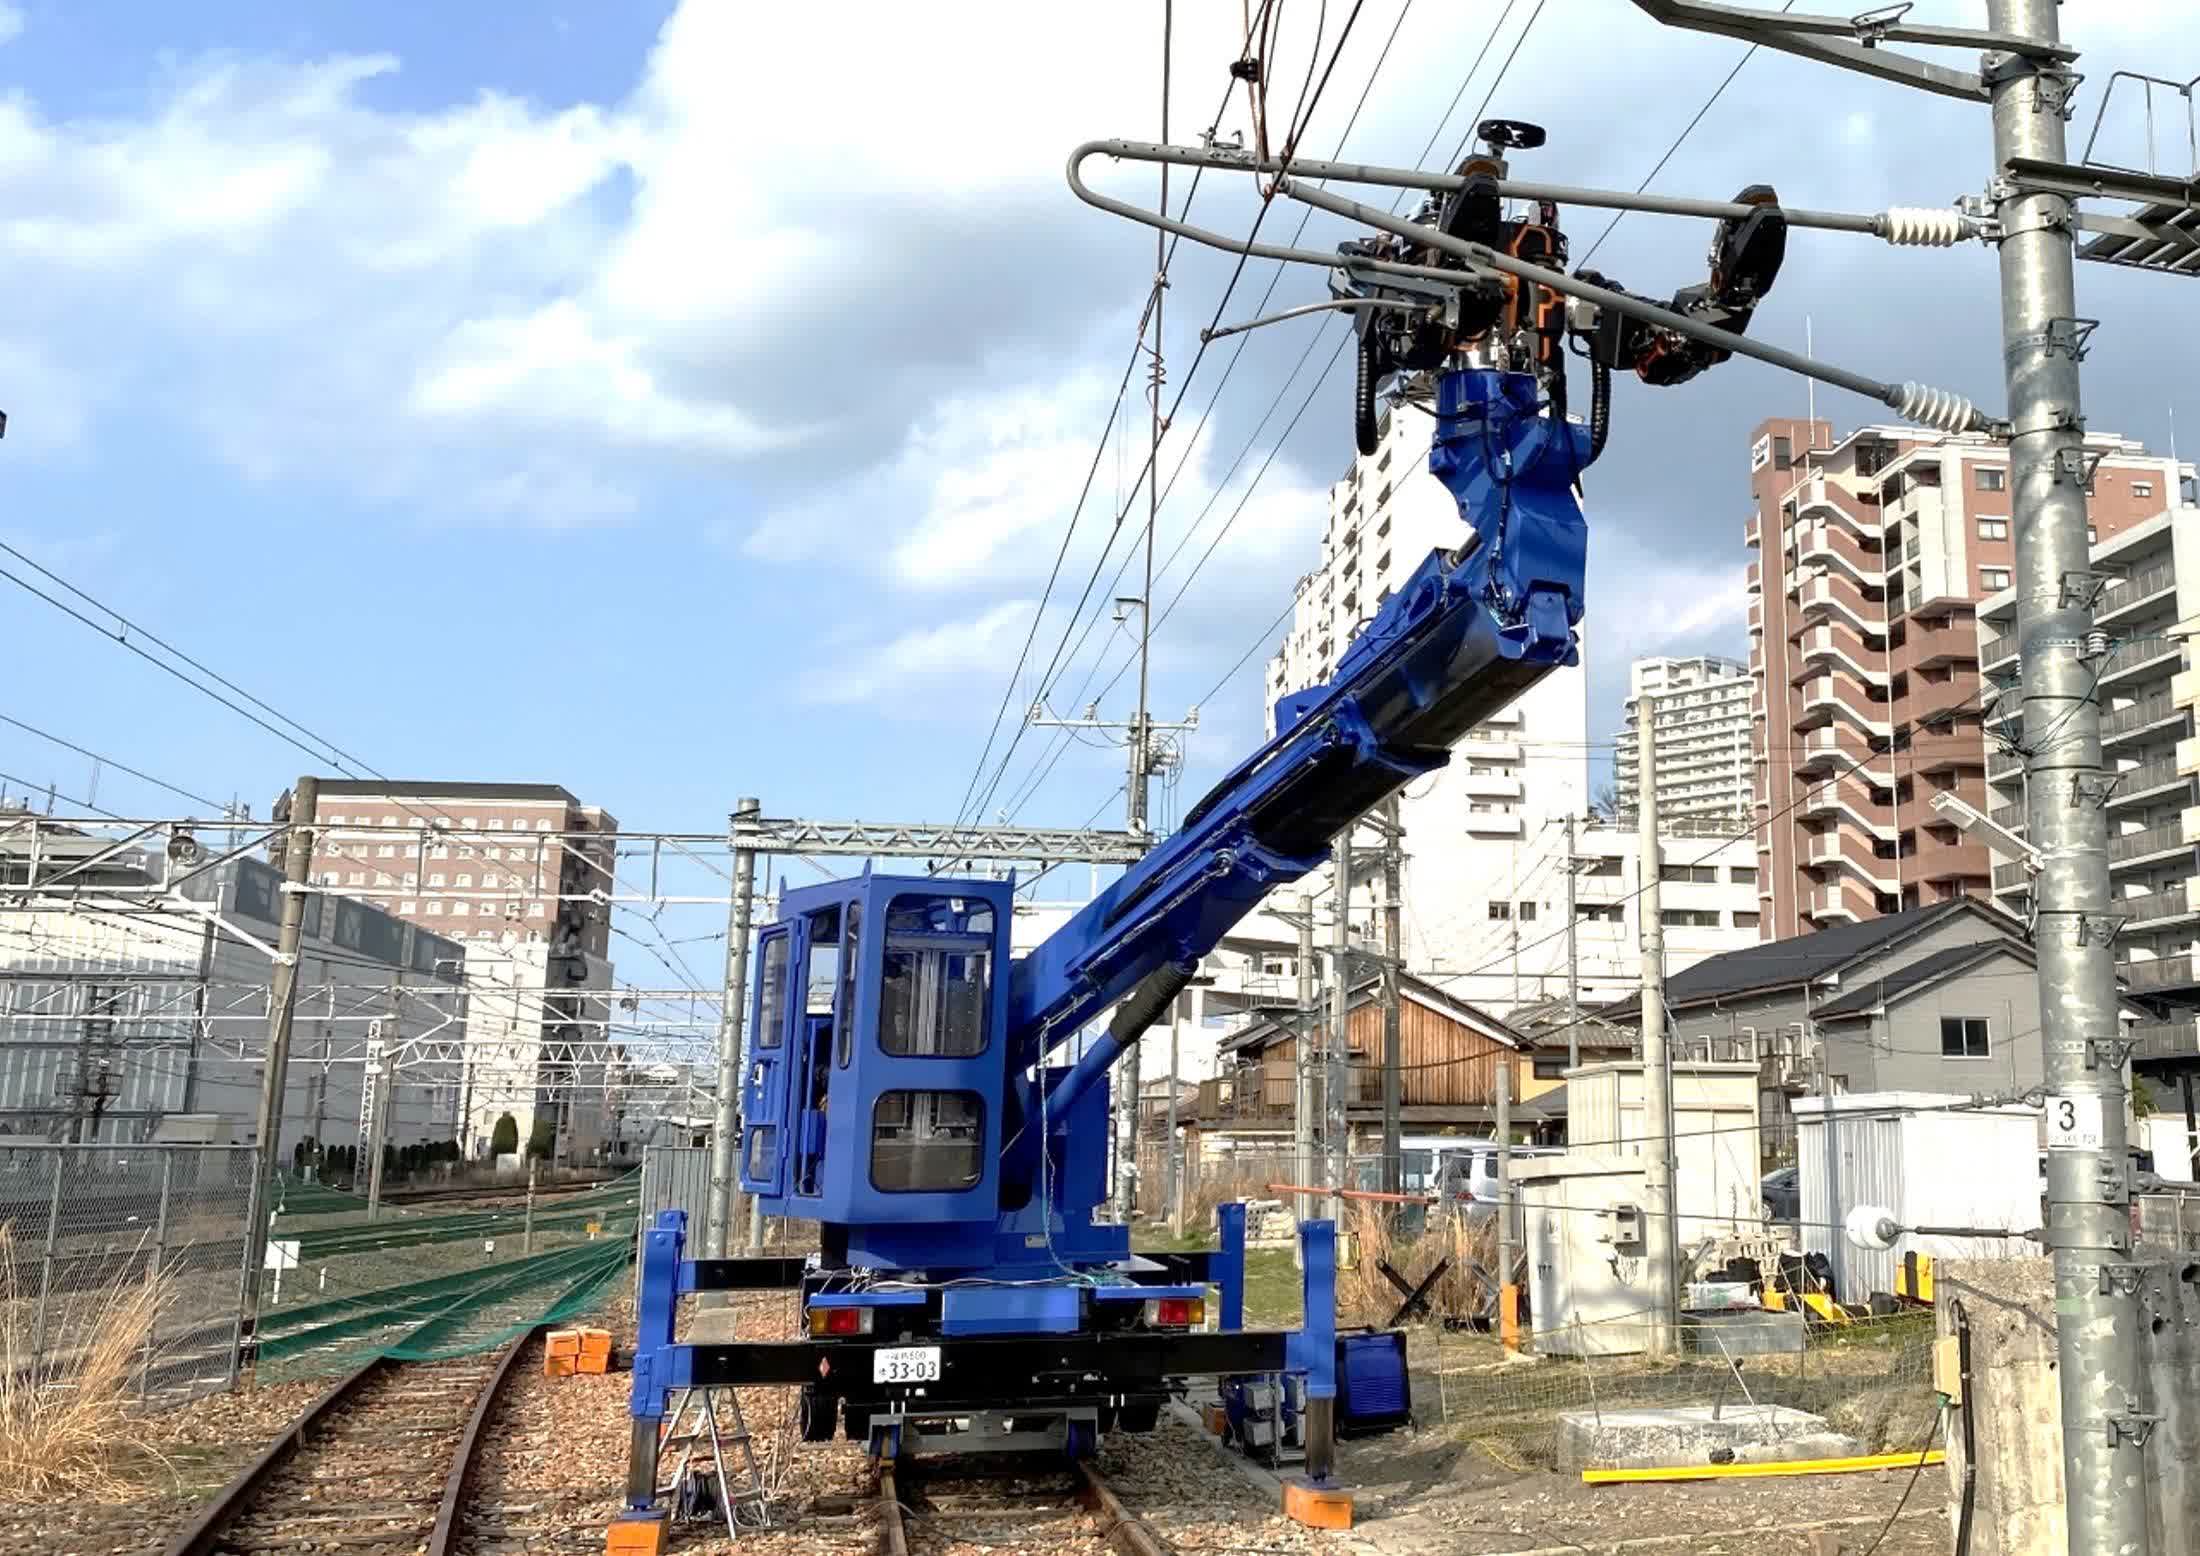 dernier robot géant japonais type Gundam charge tâches maintenance ferroviaire